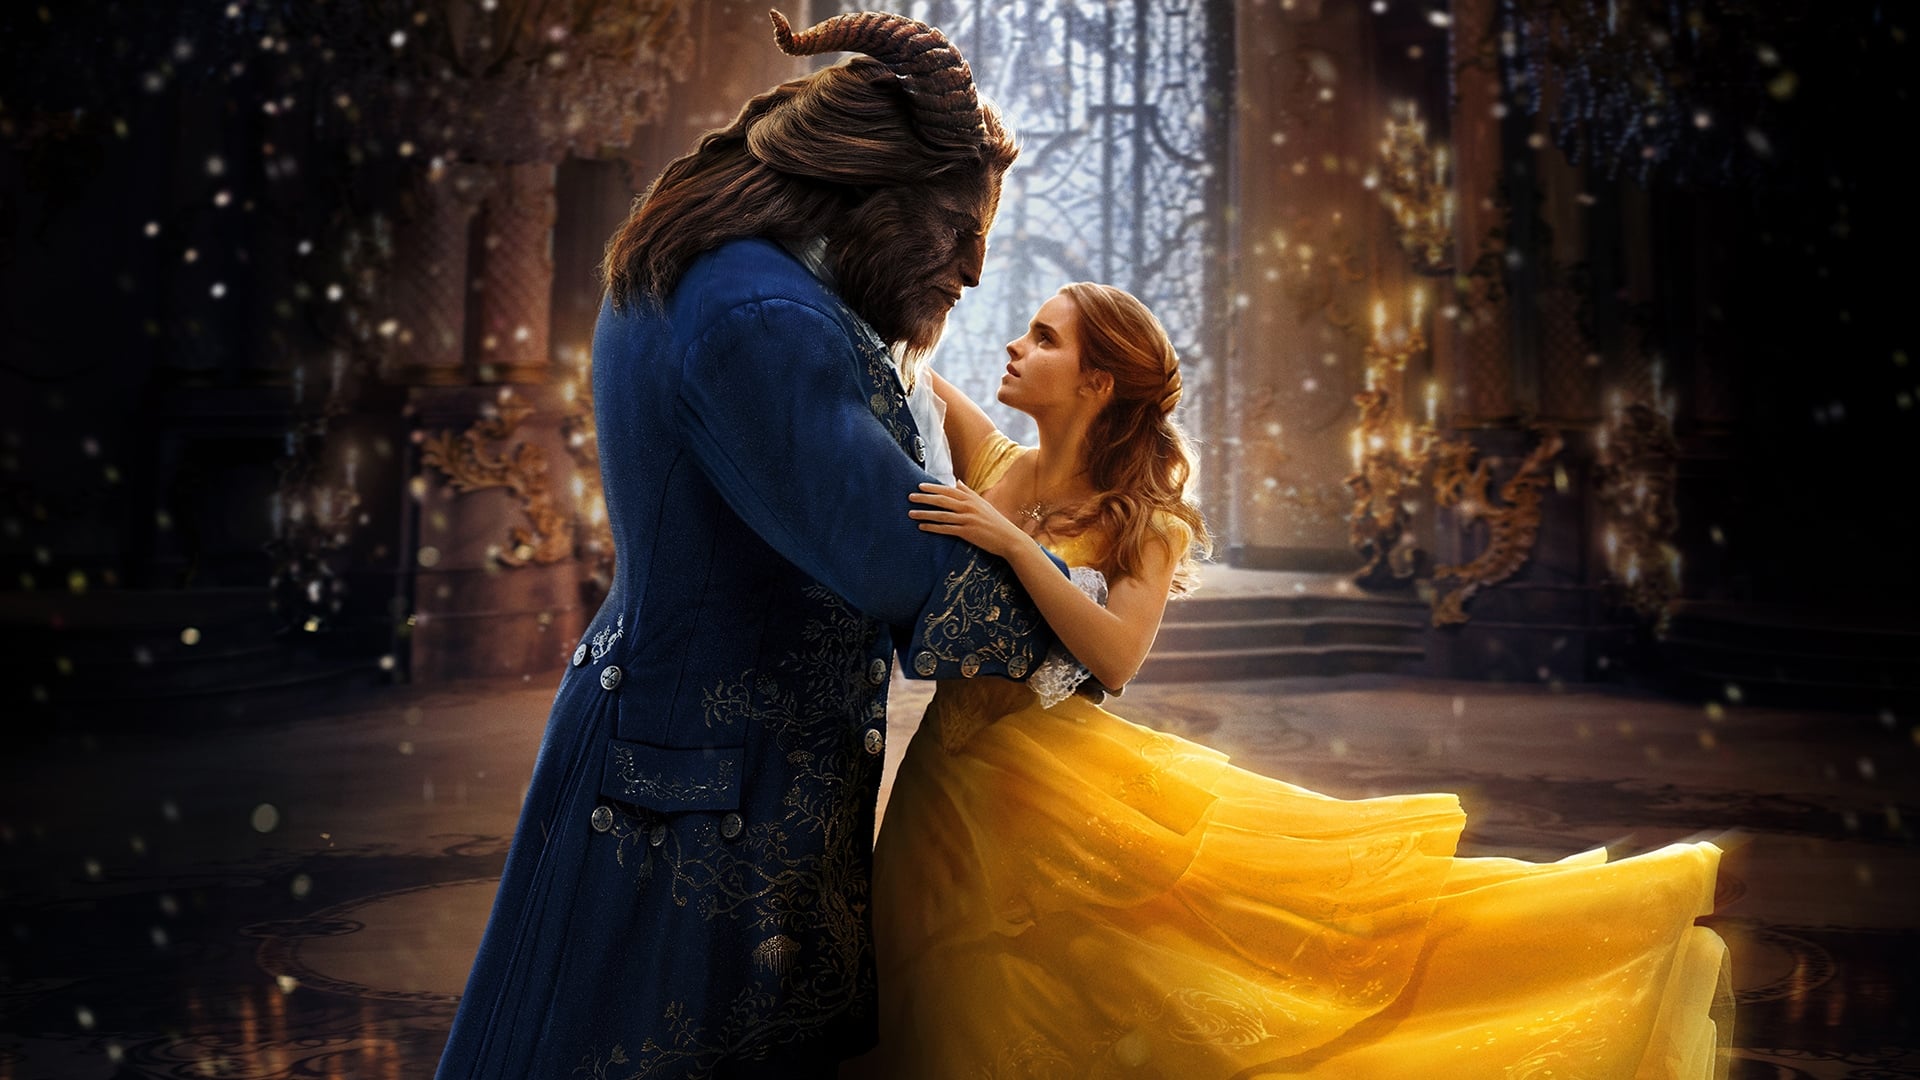 Poster Phim Người Đẹp và Quái Vật (Beauty and the Beast)